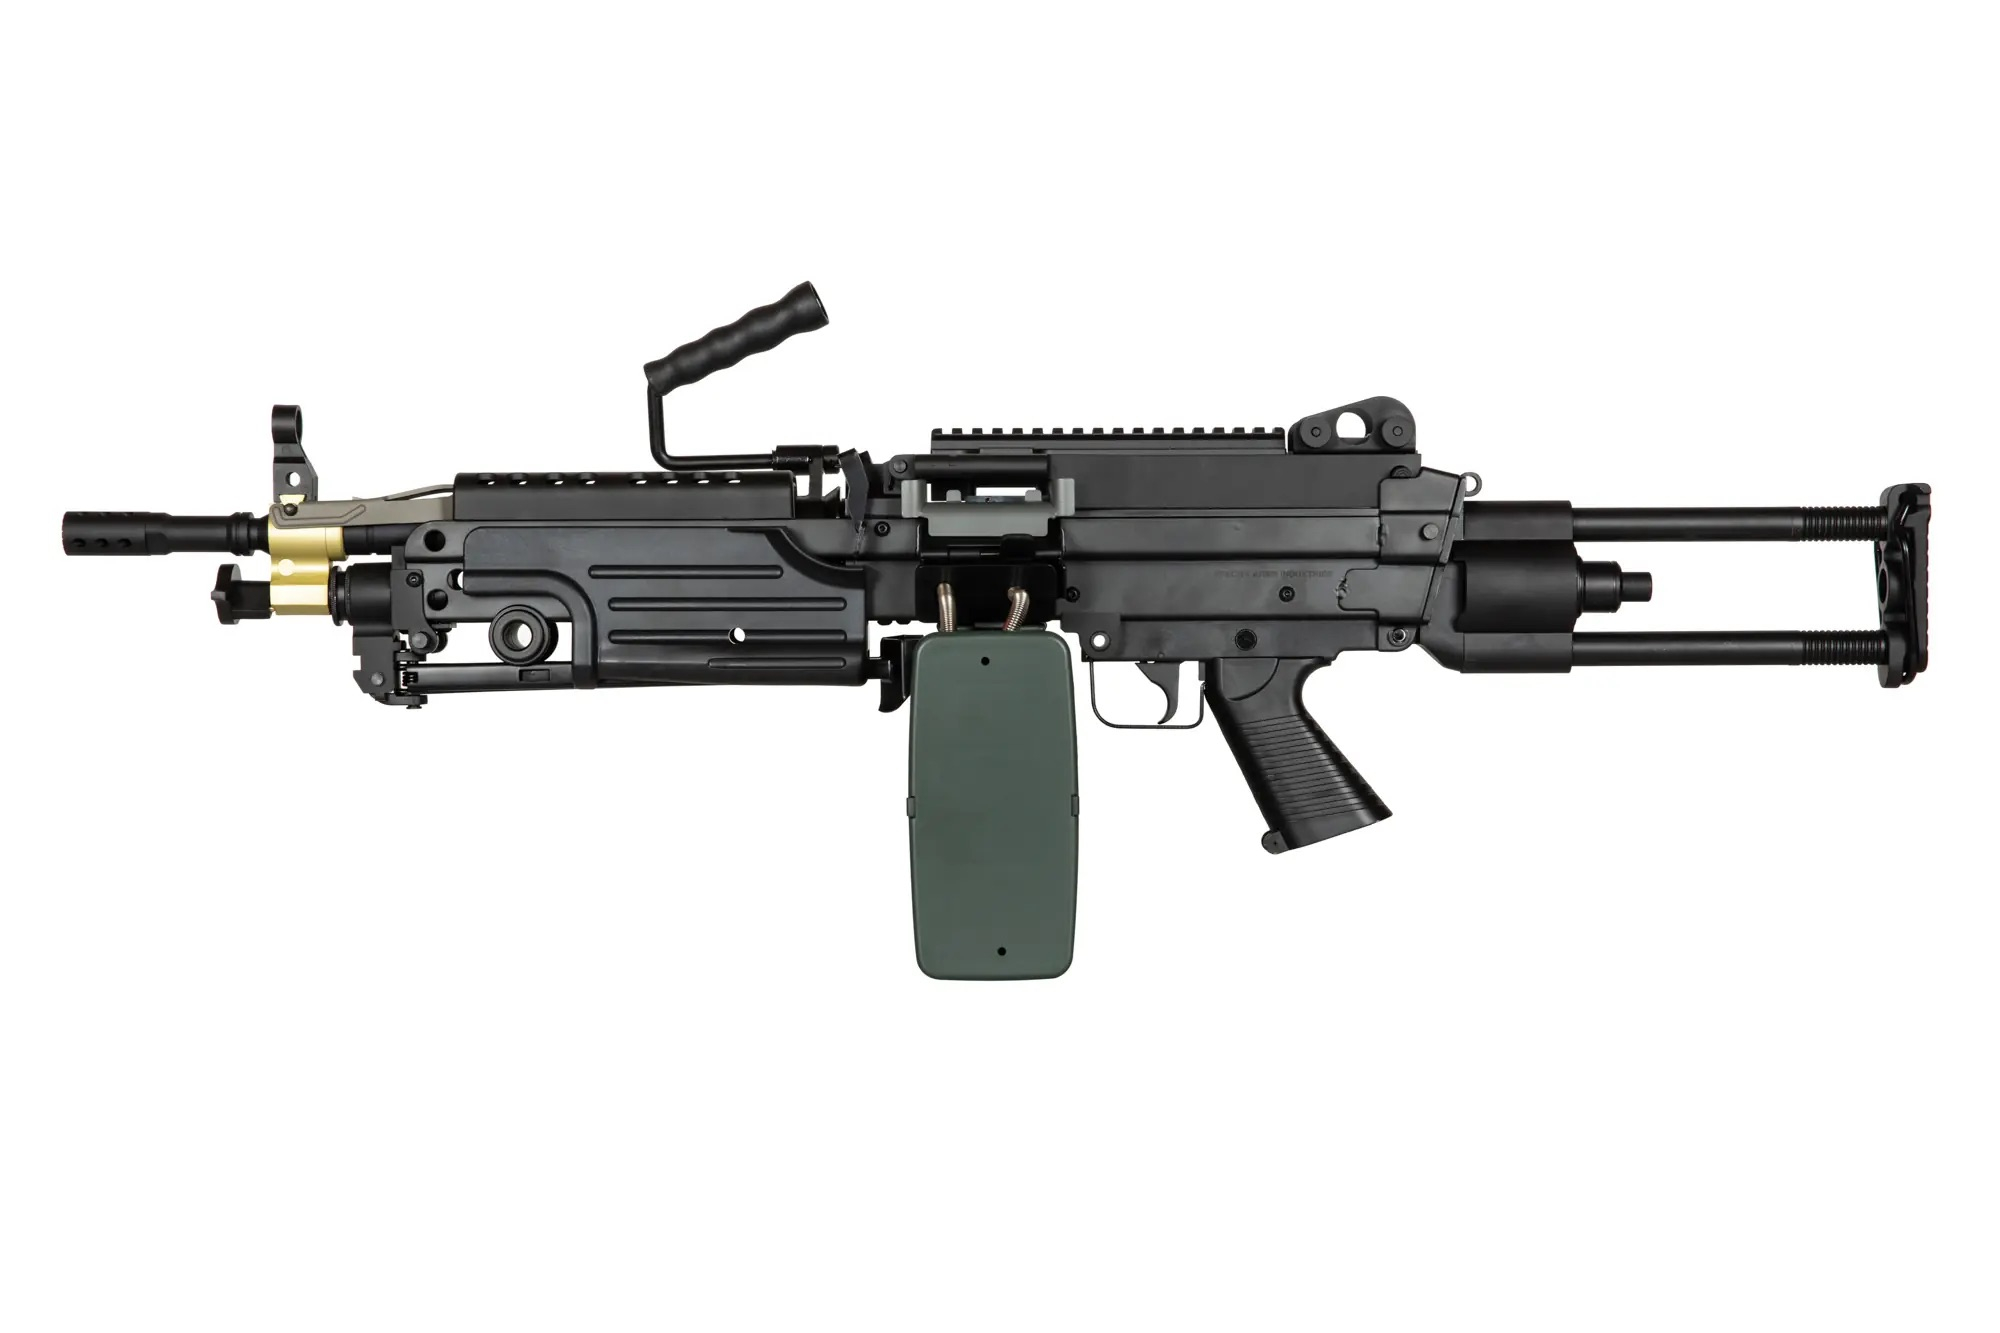 Specna Arms SA-249 PARA EDGE™ - černá